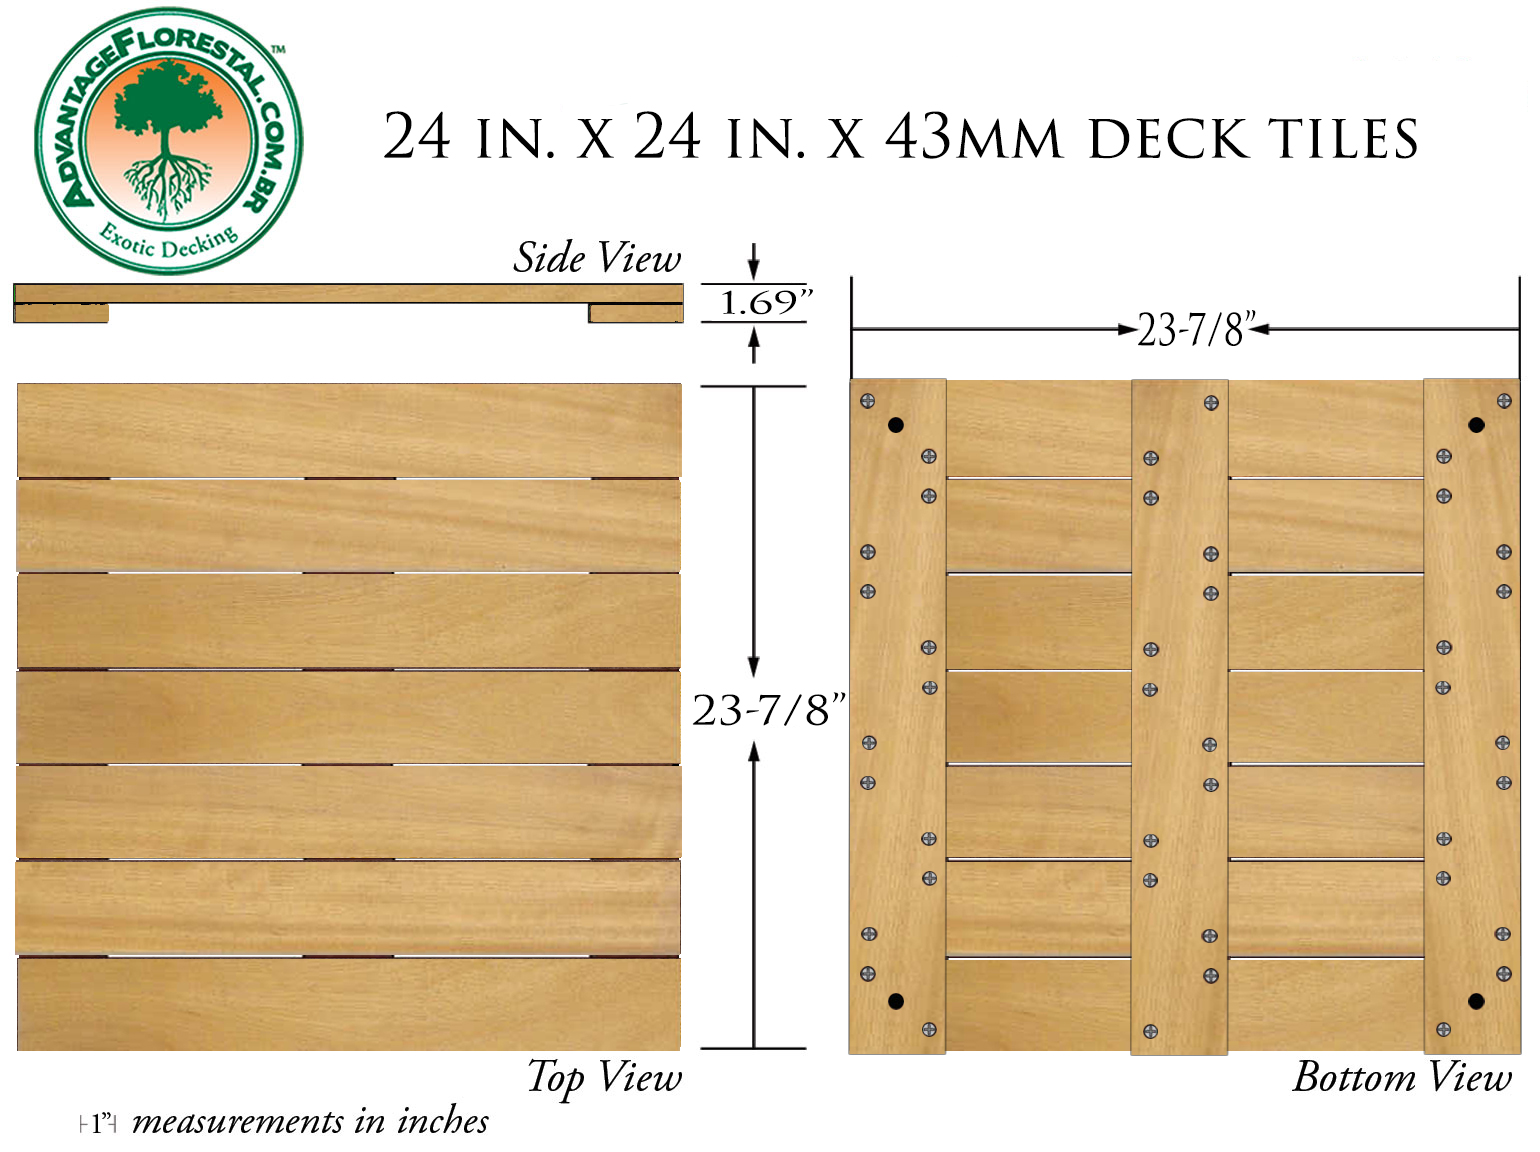 Tatajuba Deck Tile 24 in. x 24 in. x 43mm